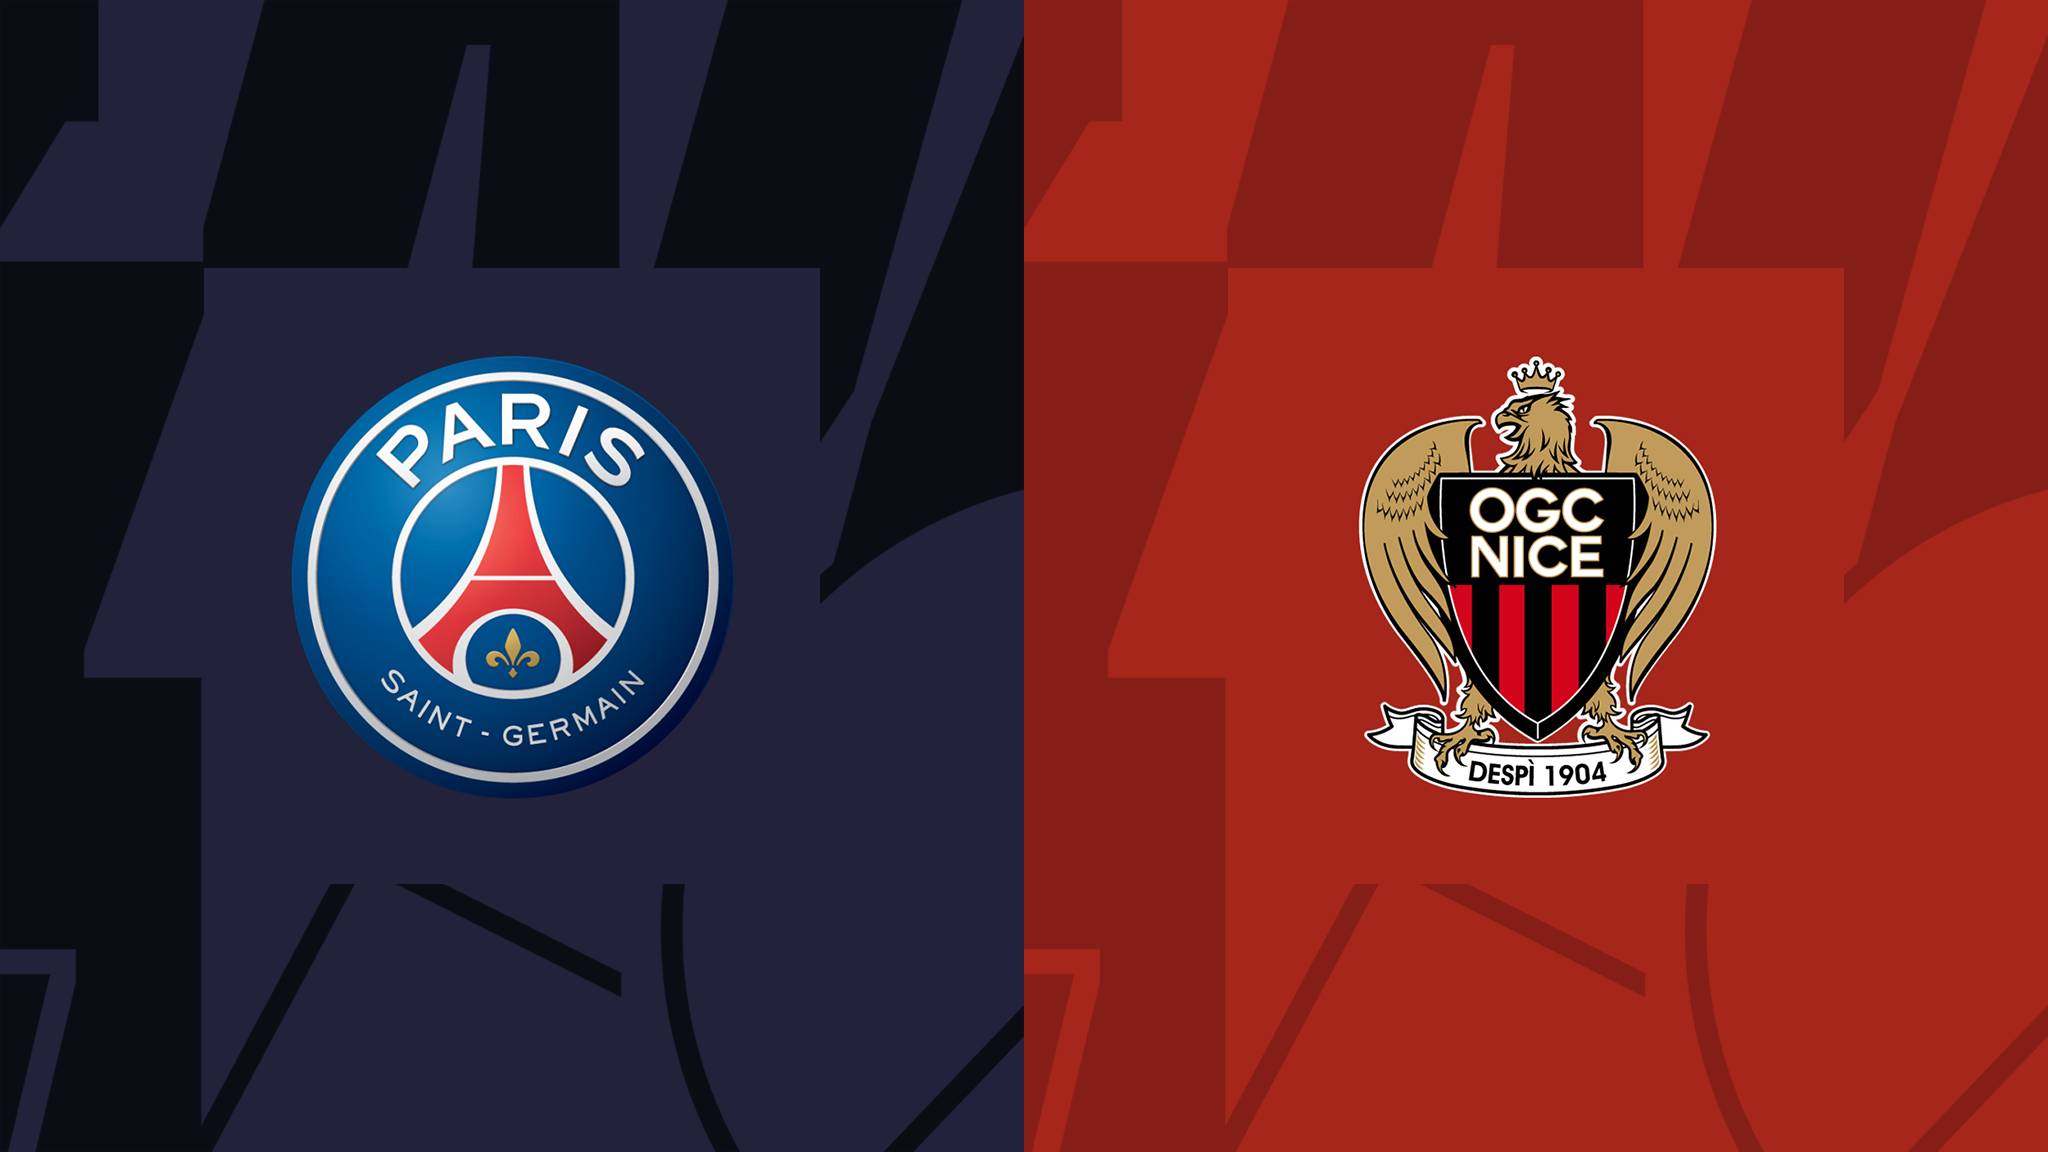 Soi kèo PSG vs Nice